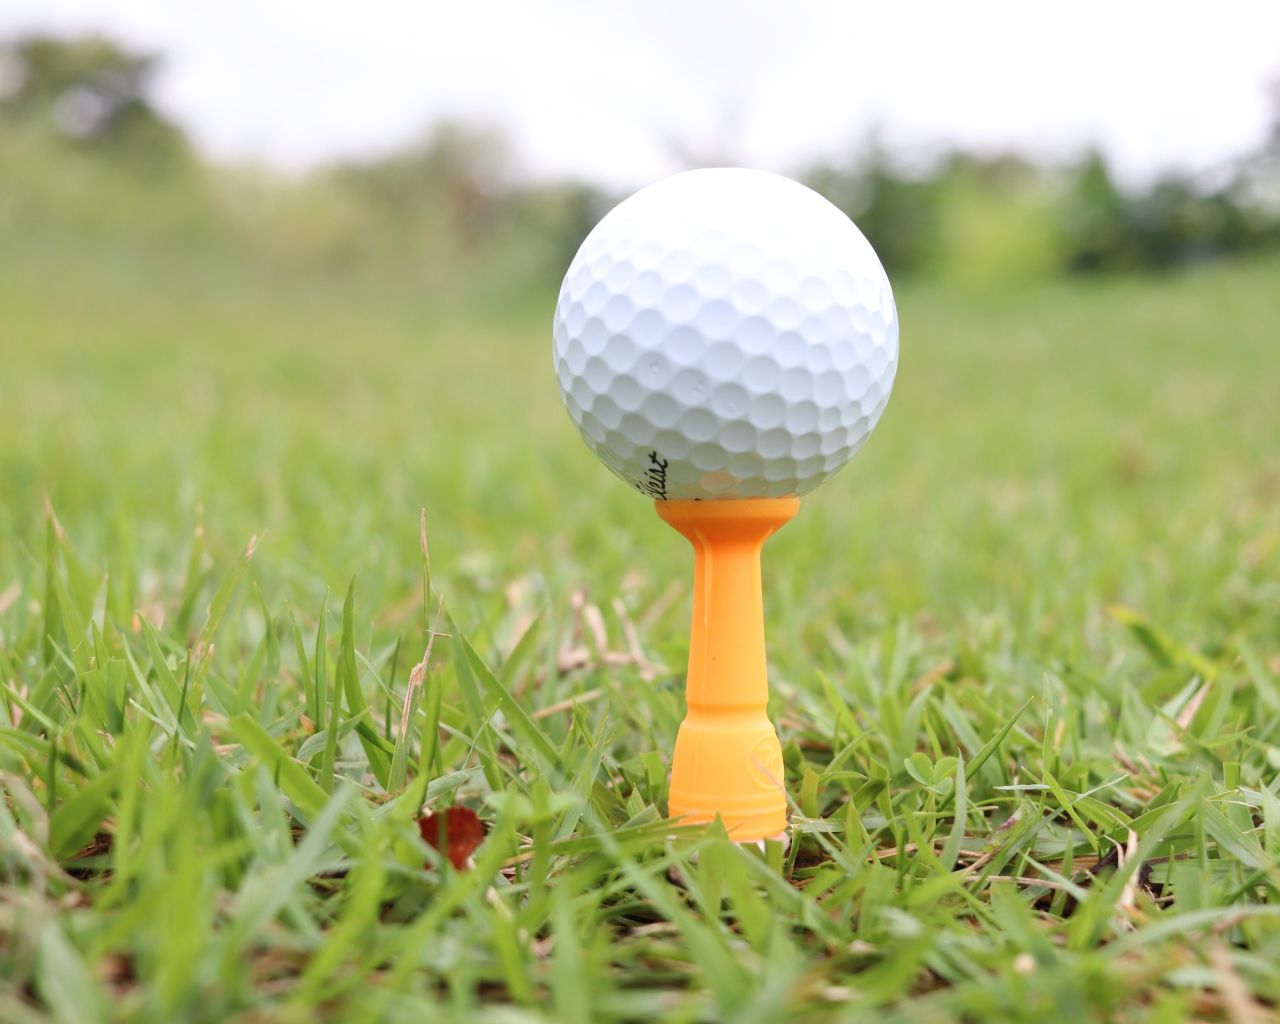 Мячик для гольфа на поле с зеленой травой 